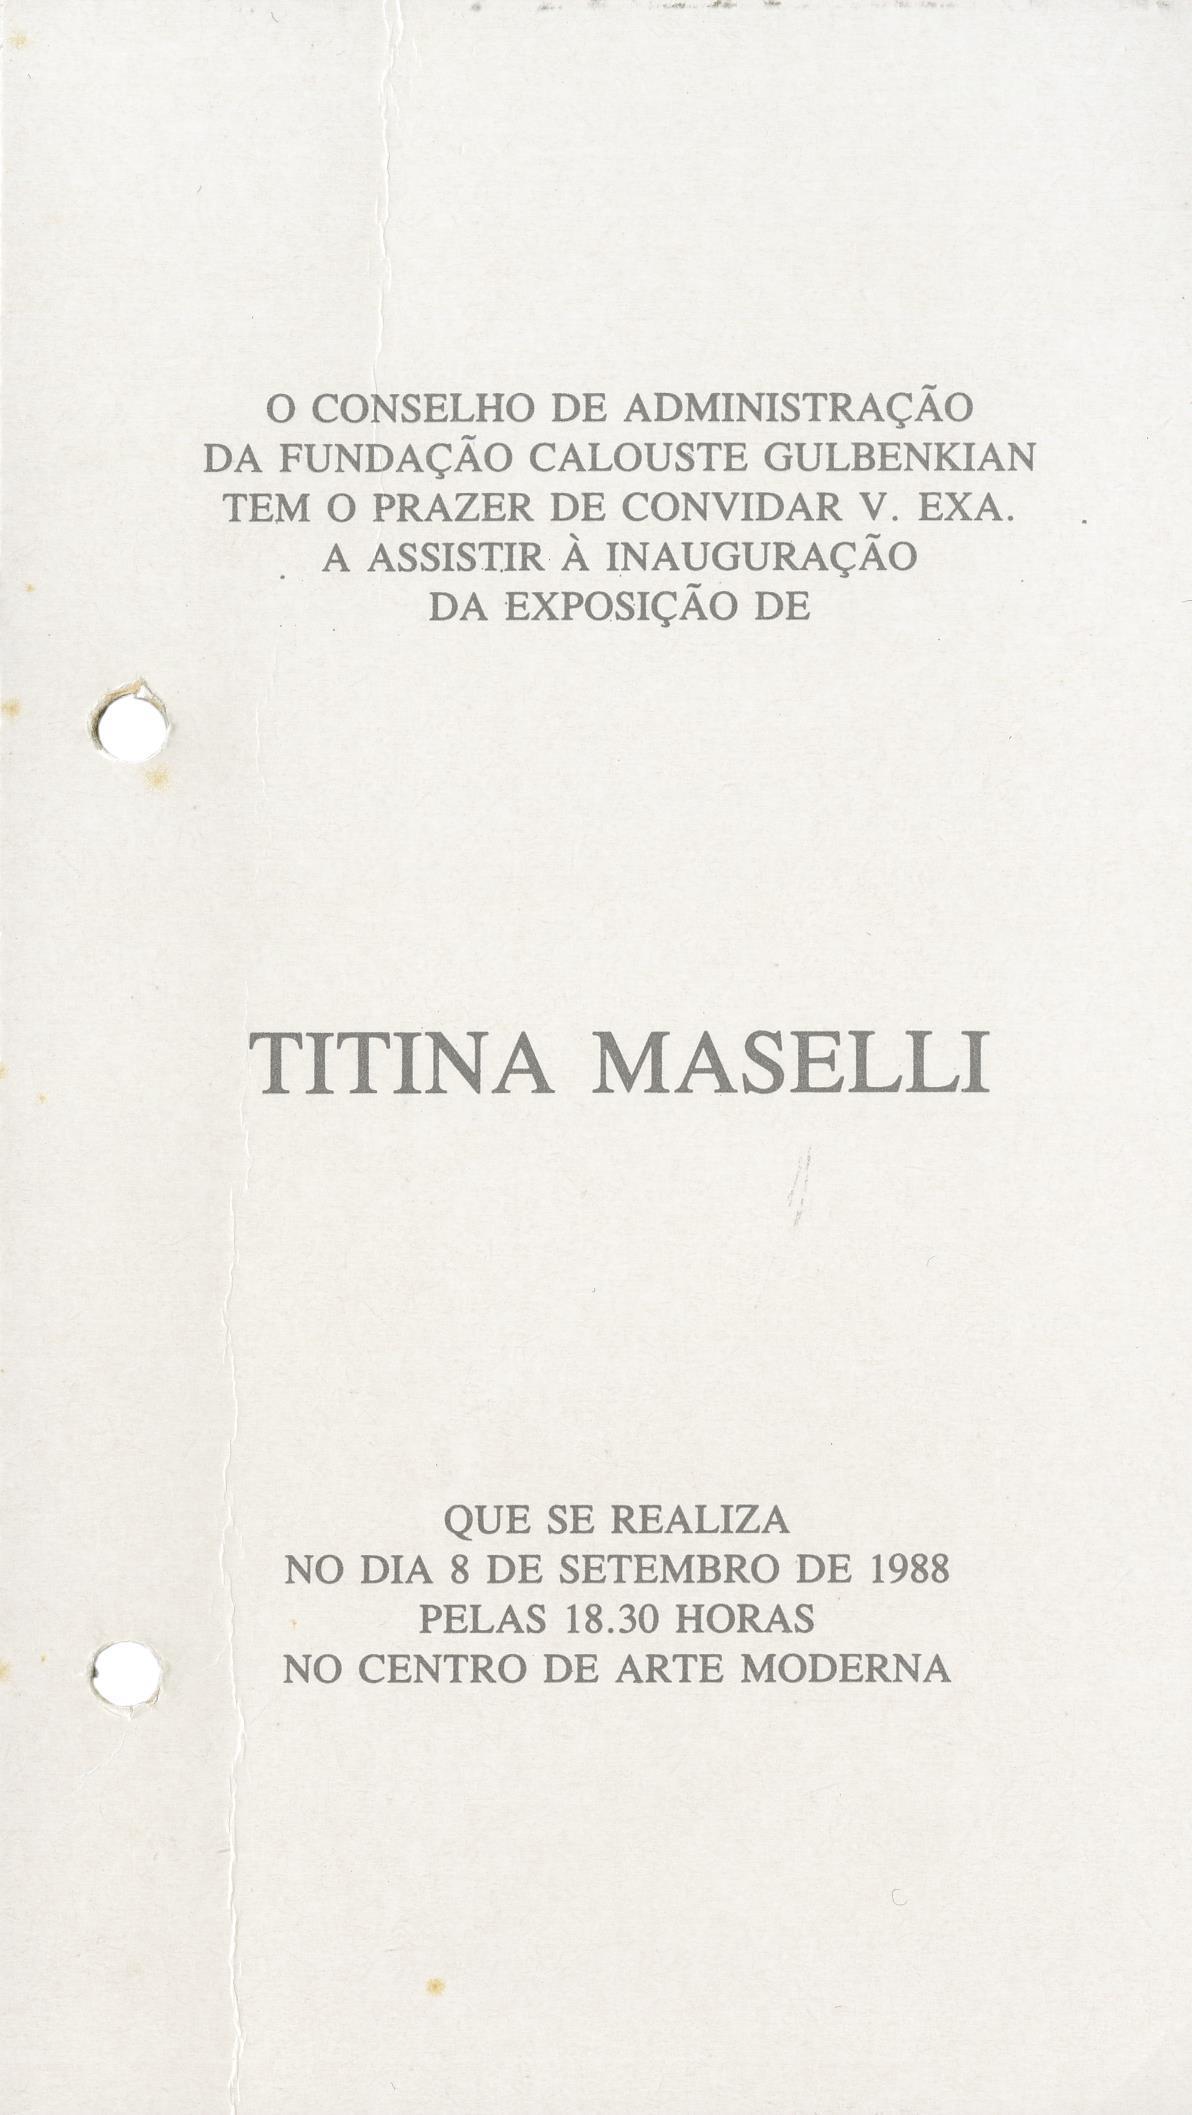 Titina Maselli